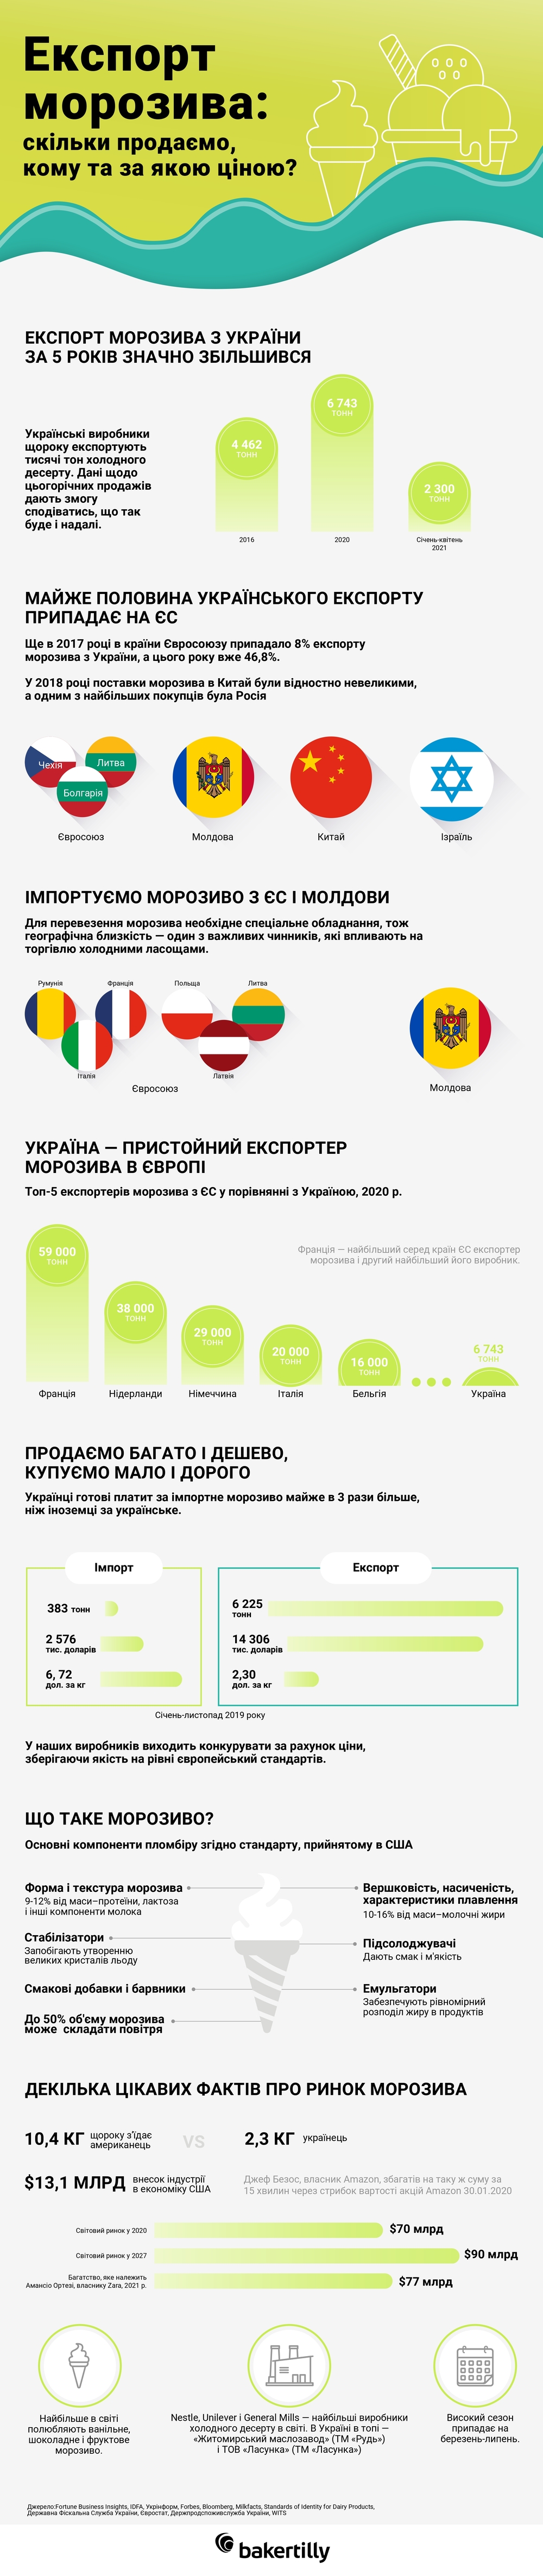 інфографіка про експорт морозива з України